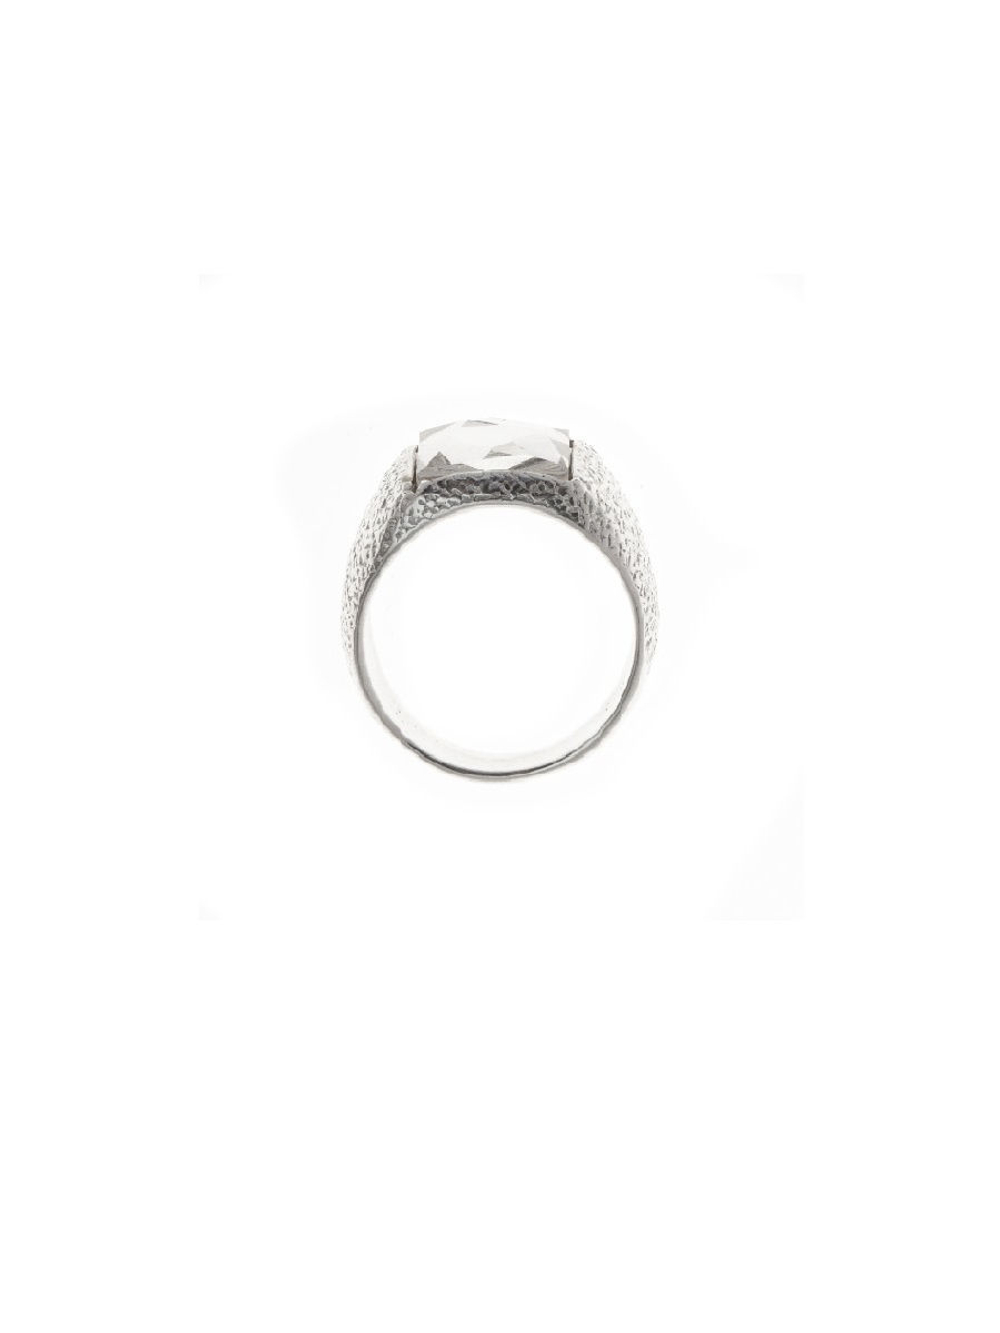 "Алудра" кольцо в серебряном покрытии из коллекции "Астрономия" от Jenavi